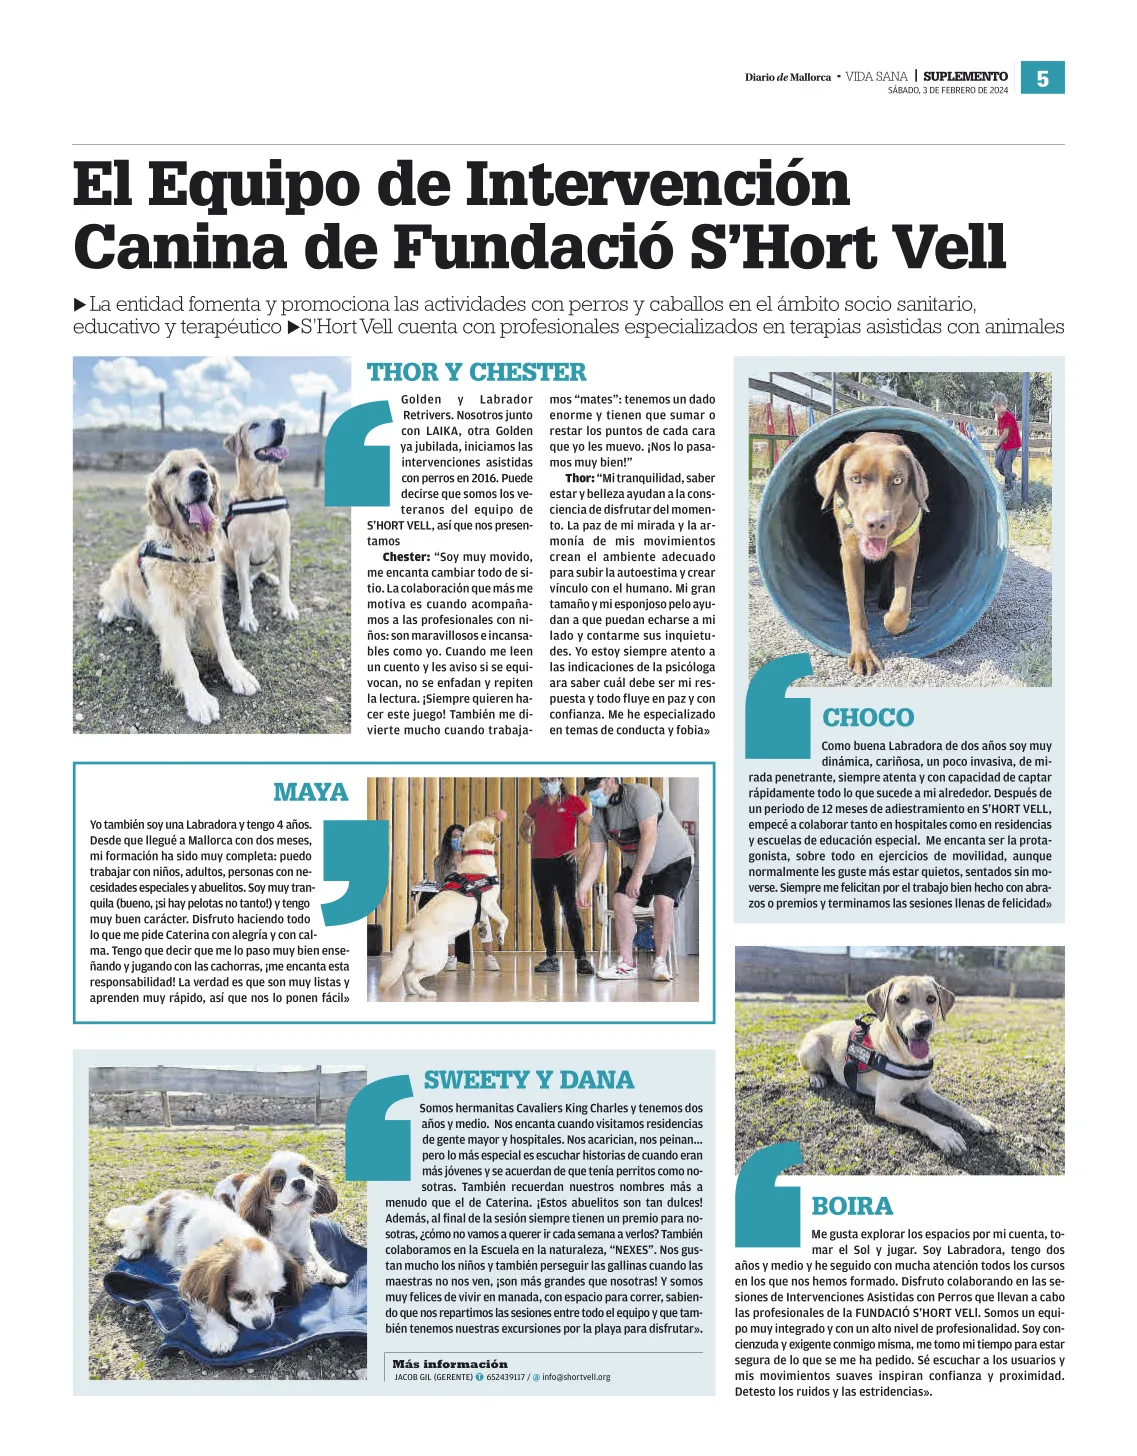 Equipo canino Fundació S'Hort Vell para Intervenciones Asistidas con perros